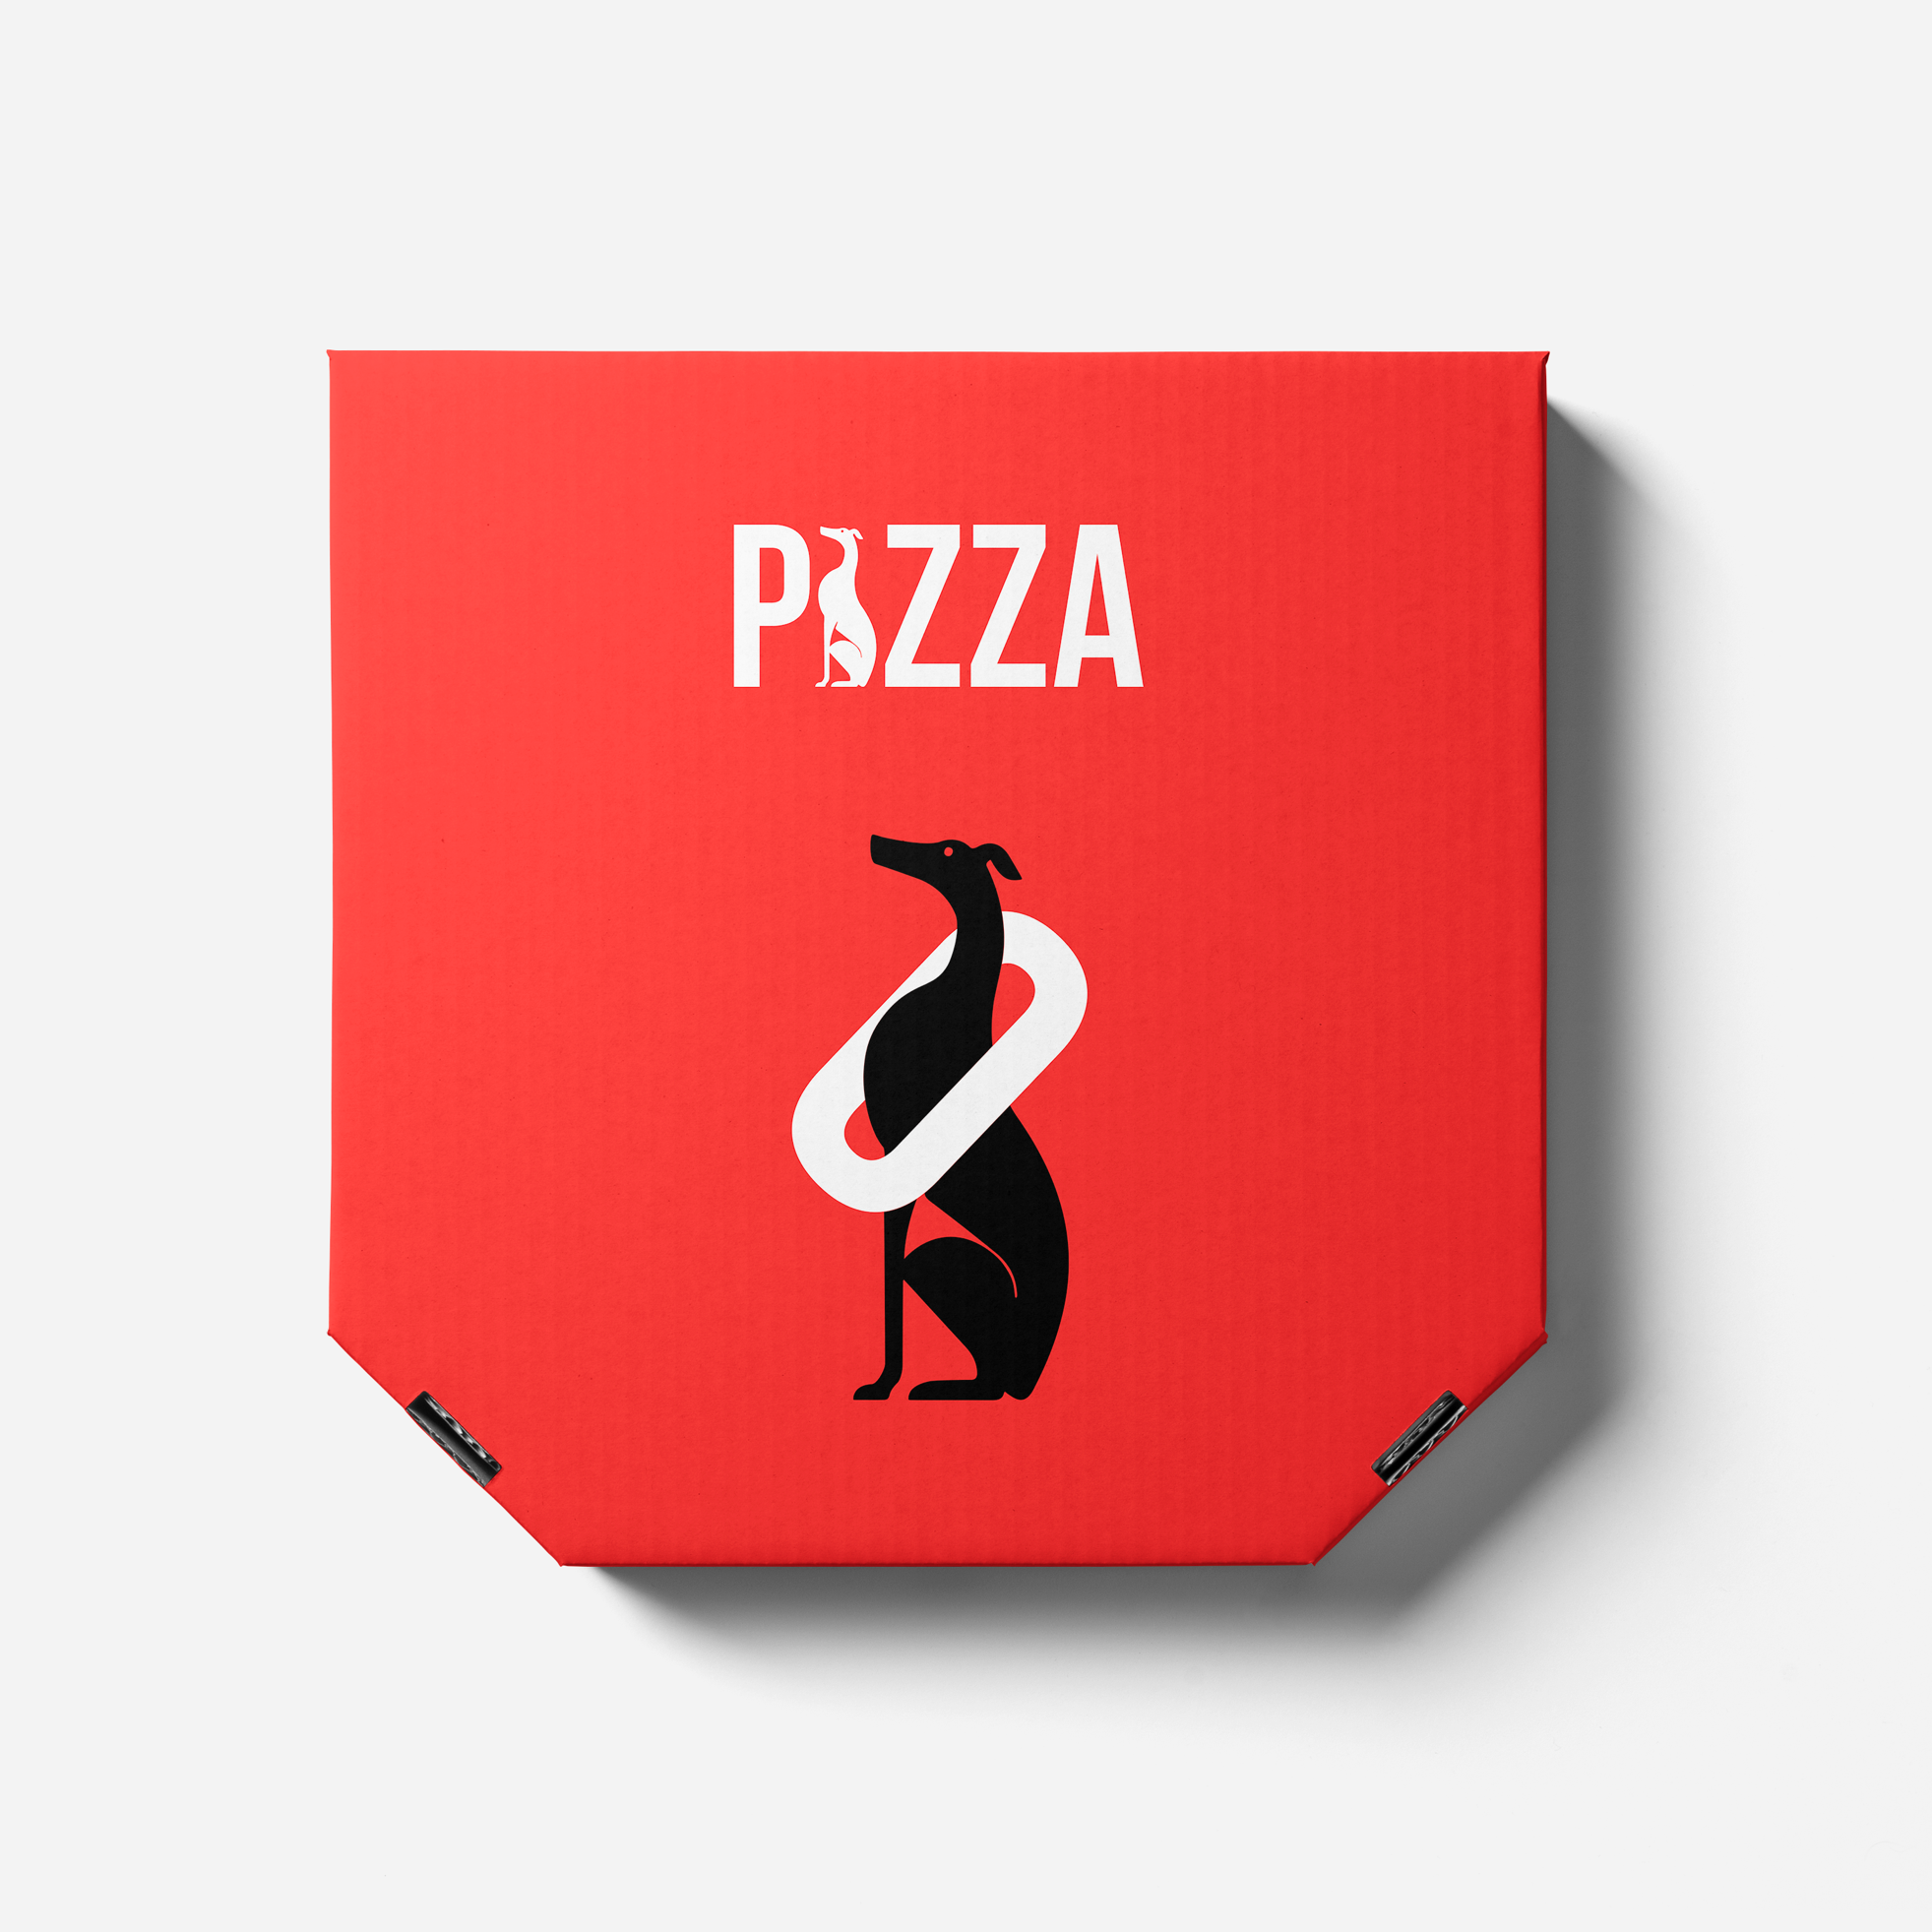 Pizza box Oliva Identity